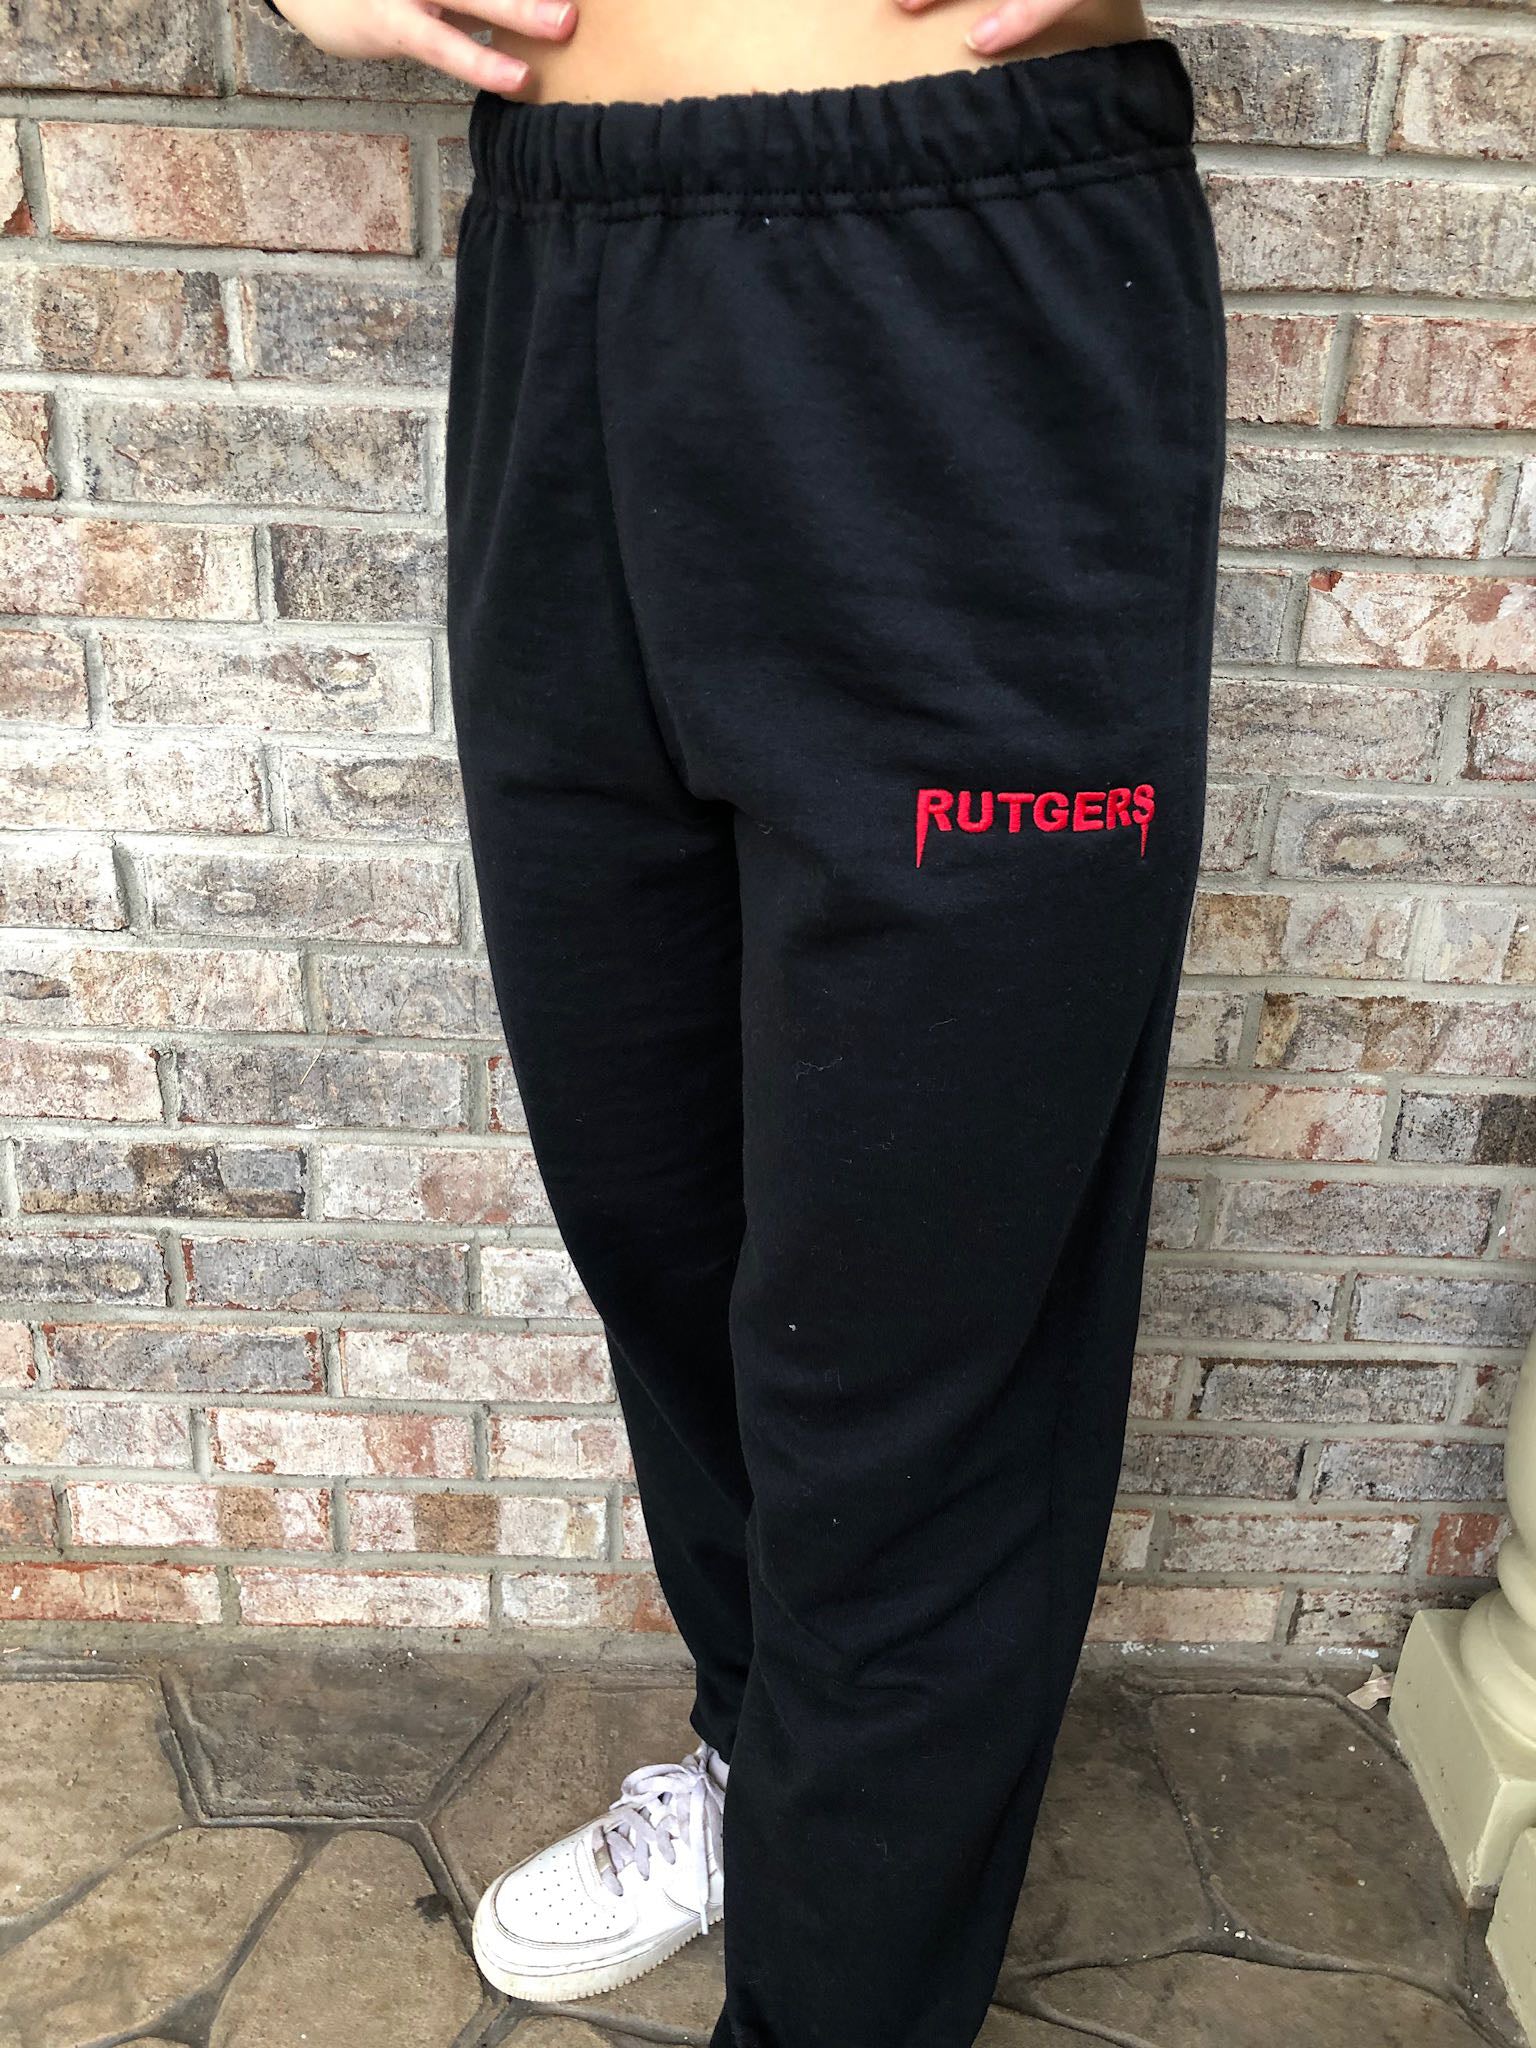 Rutgers Embroidered Sweatpants - Recess Apparel LLC